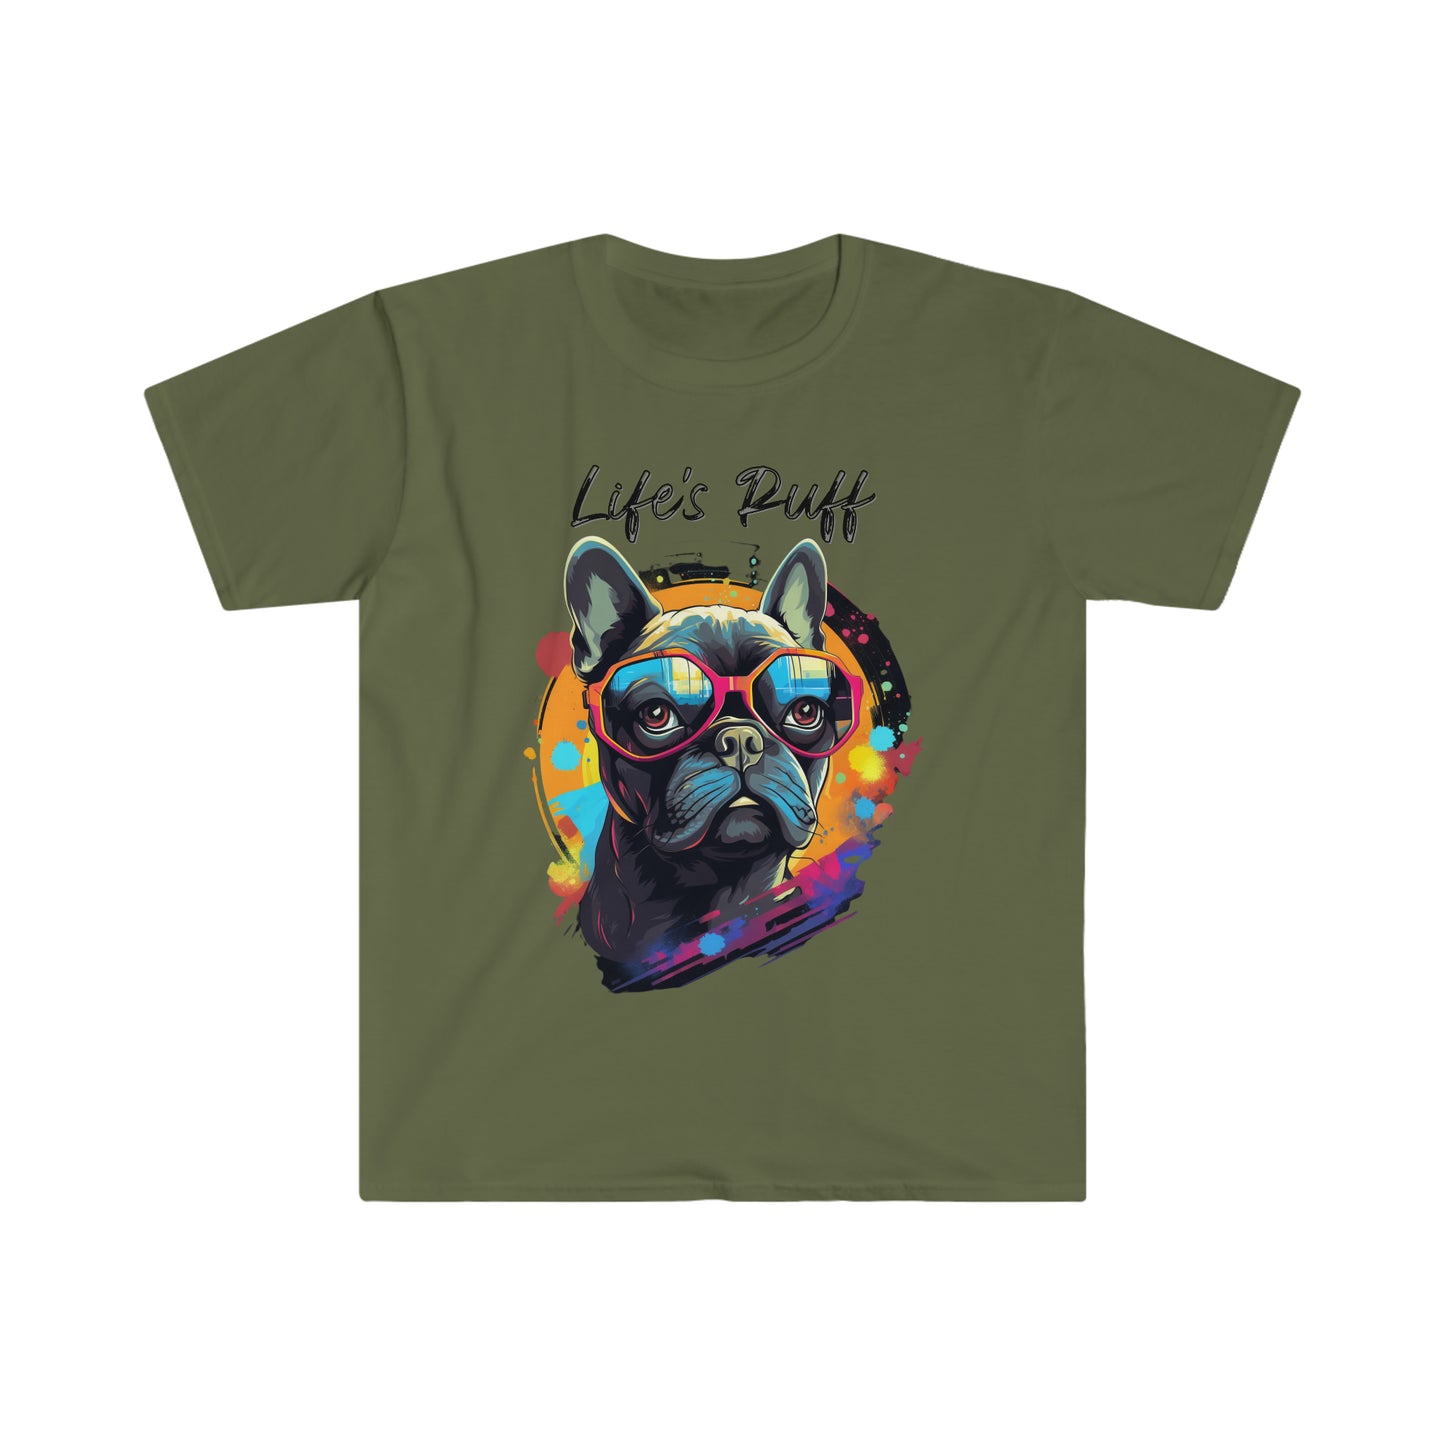 "Life's Ruff" French Bulldog T-Shirt